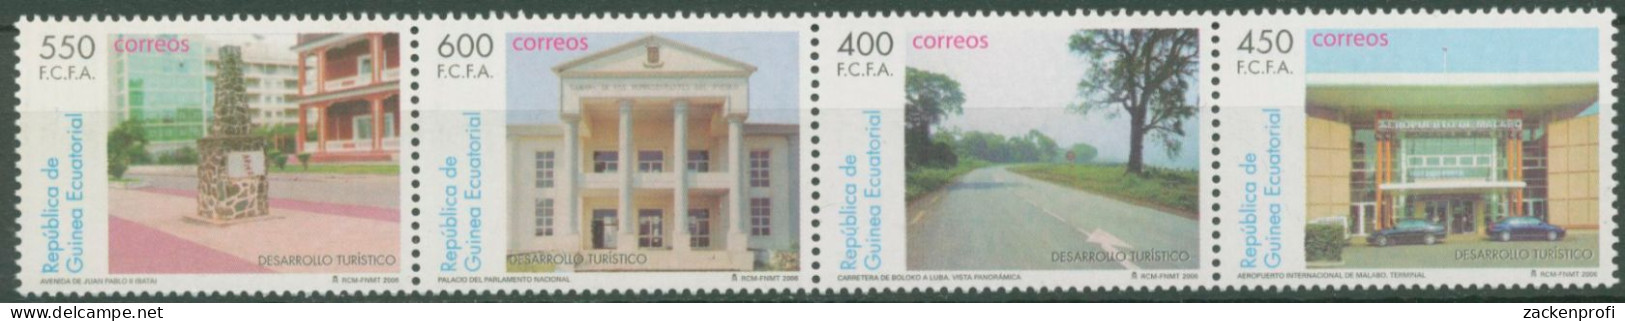 Äquatorialguinea 2006 Tourismus Bauwerke 1997/00 ZD Postfrisch (C62603) - Äquatorial-Guinea